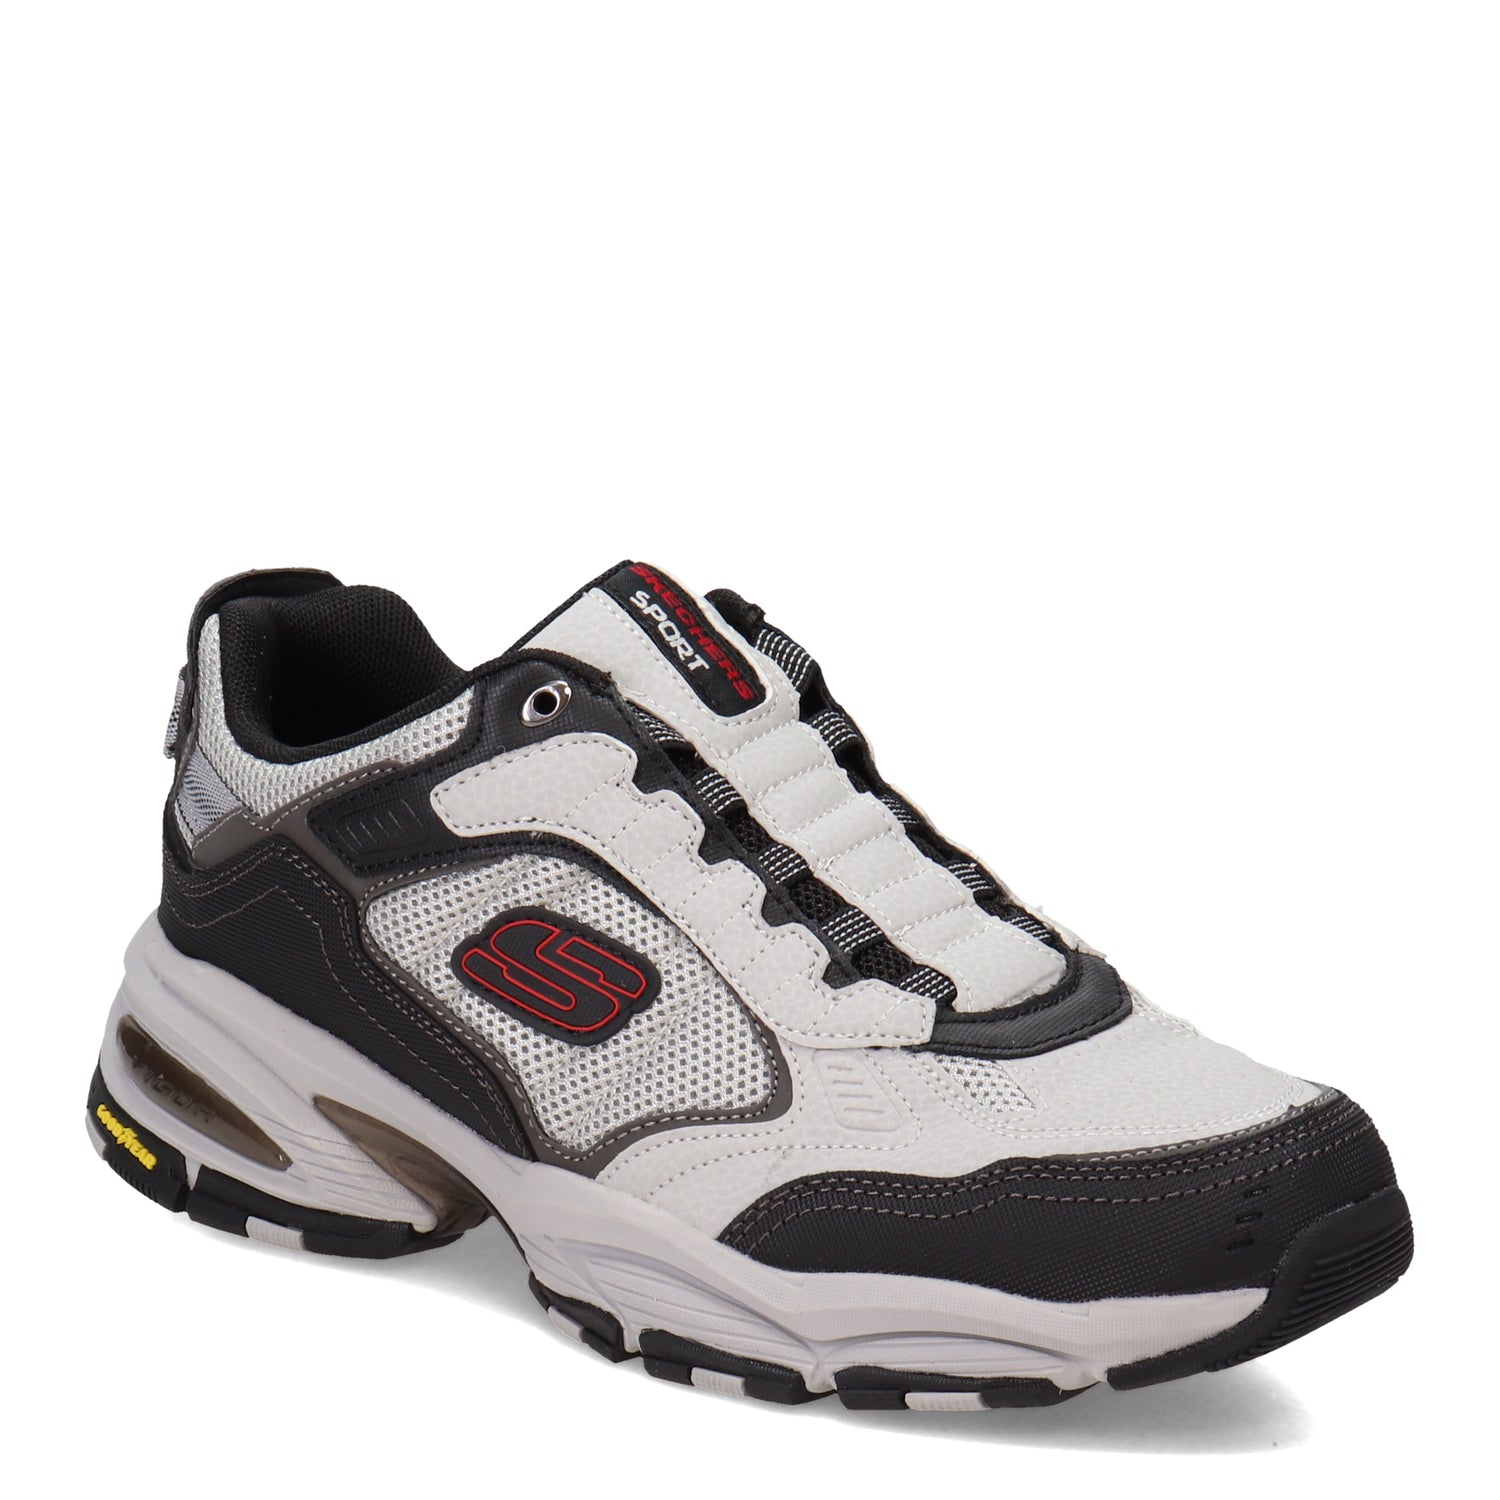 Peltz Shoes  Men's Skechers Vigor 3.0 Slip-On Sneaker - Wide Width Grey/Black 237356W-GYBK